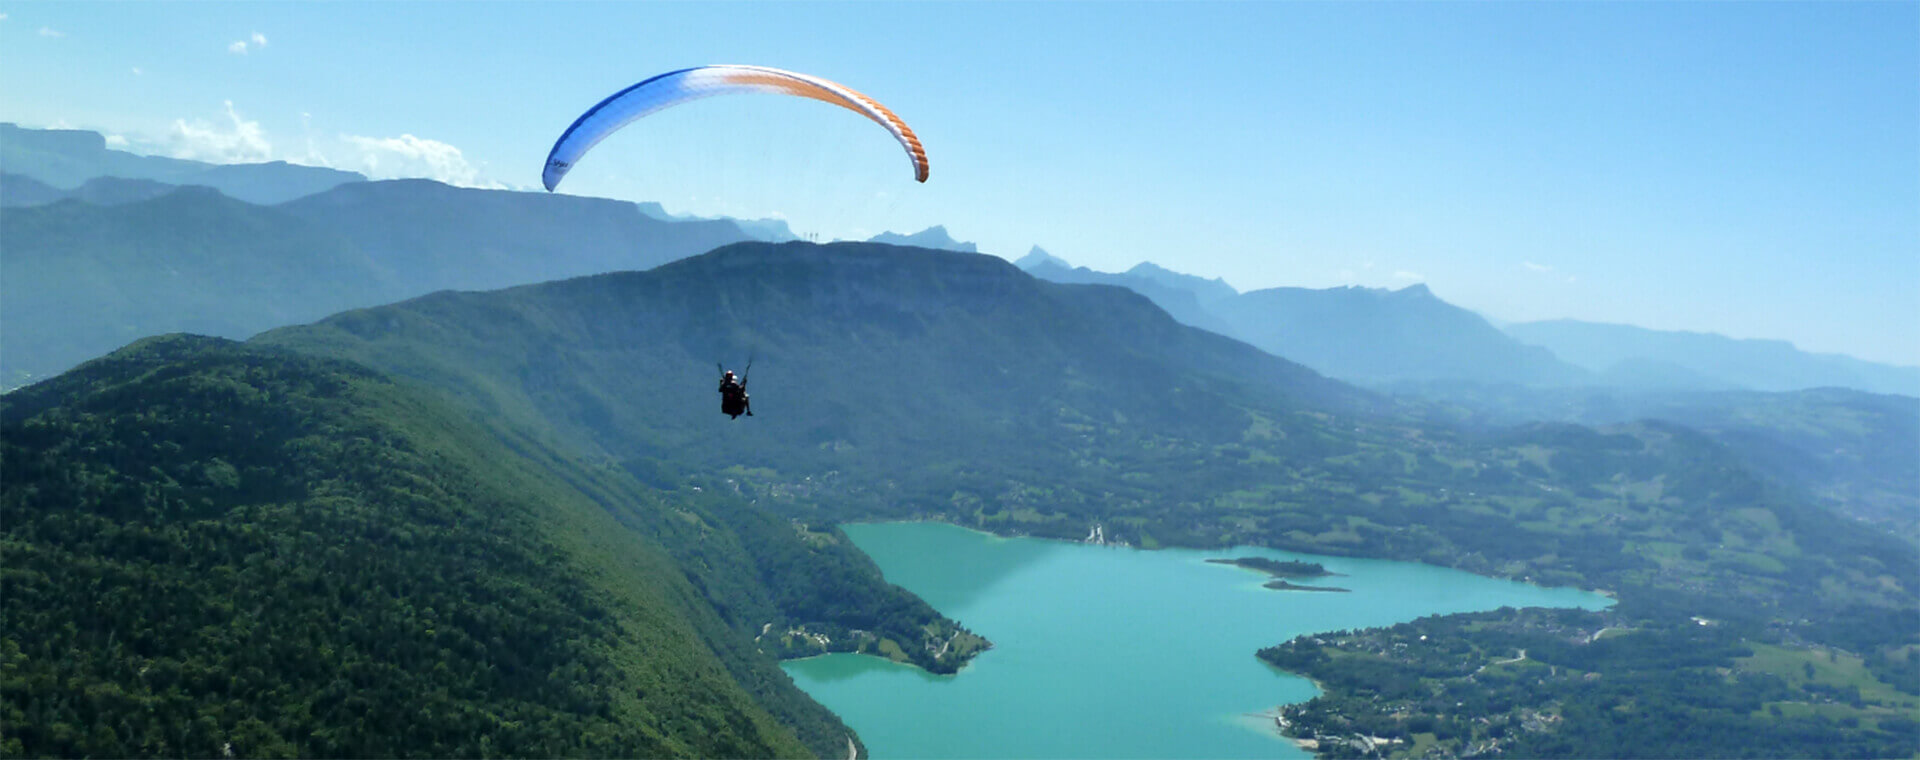 Parapente, activité sportive  de plein air en Savoie